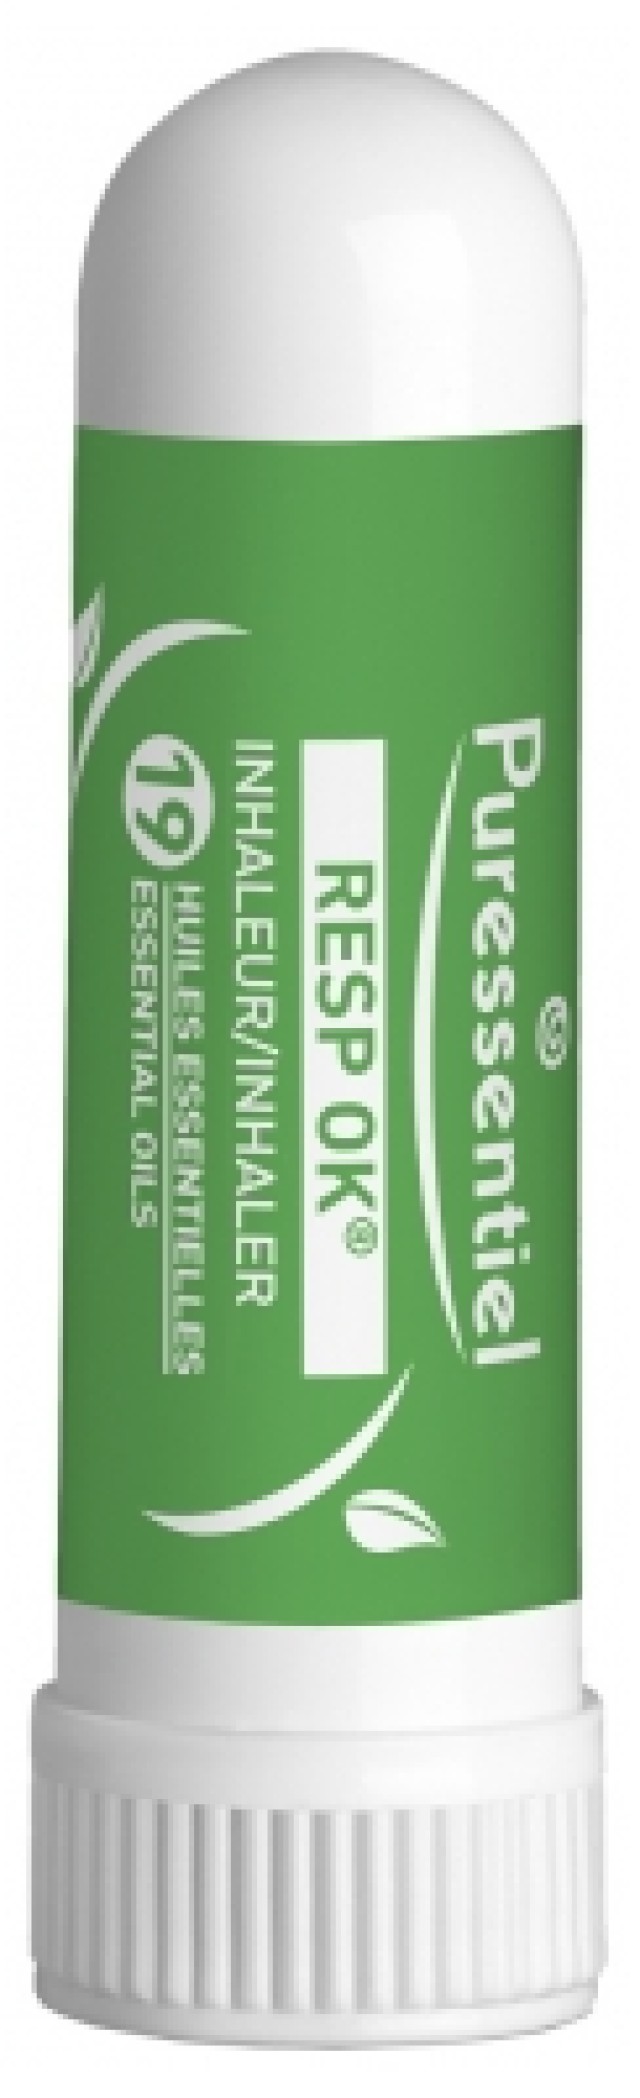 Puressentiel Resp OK Inhaler with 19 Essential Oils Συσκευή Εισπνοών για Βουλωμένη Μύτη με Αιθέρια Έλαια 1ml